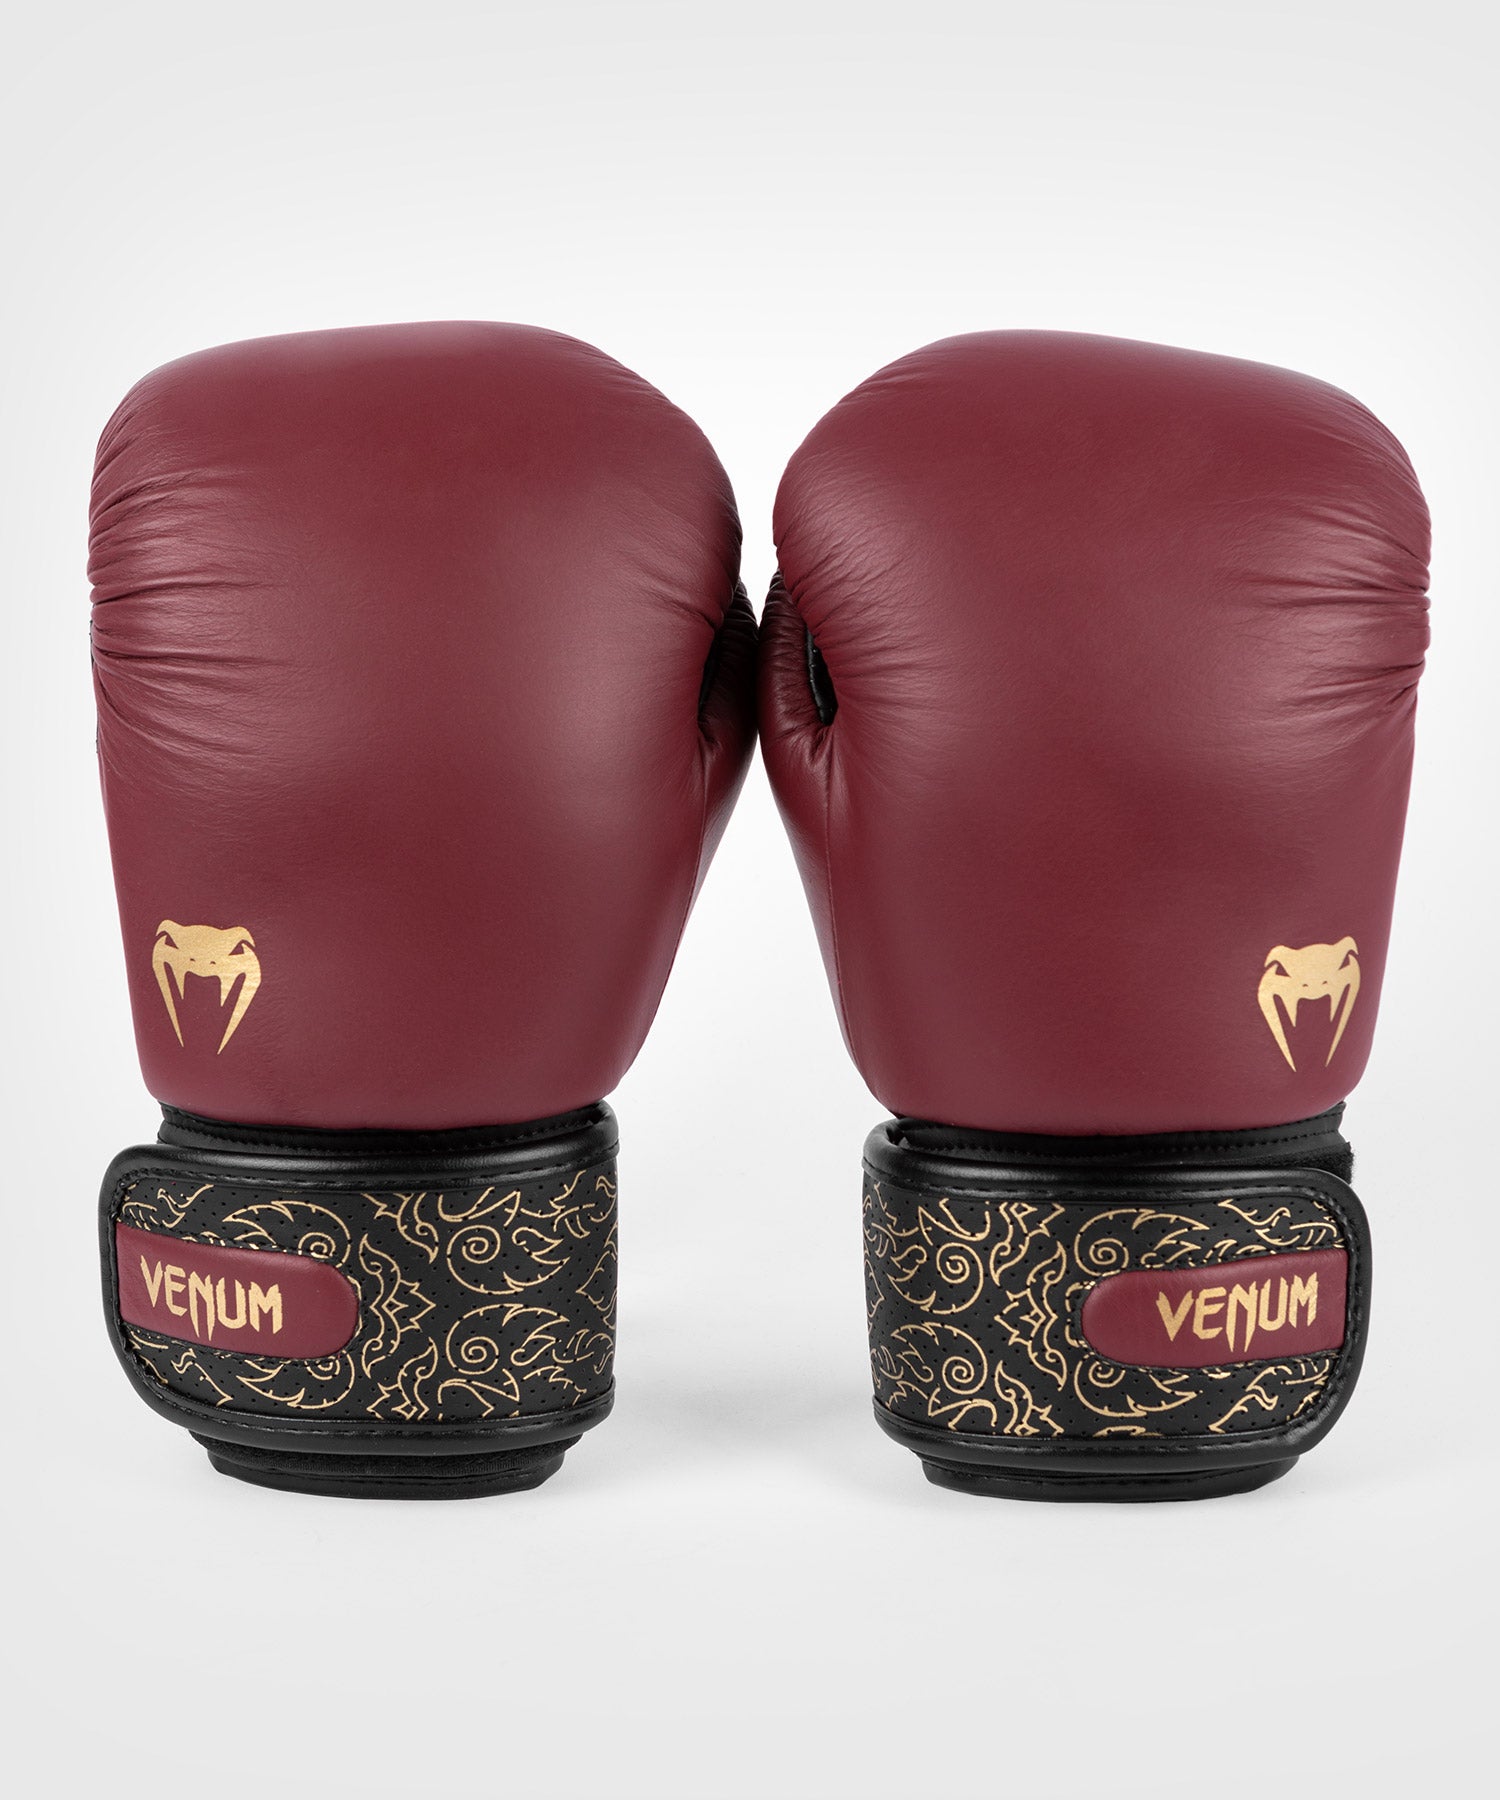 Venum Power 2.0 ボクシンググローブ - バーガンディ/ブラック